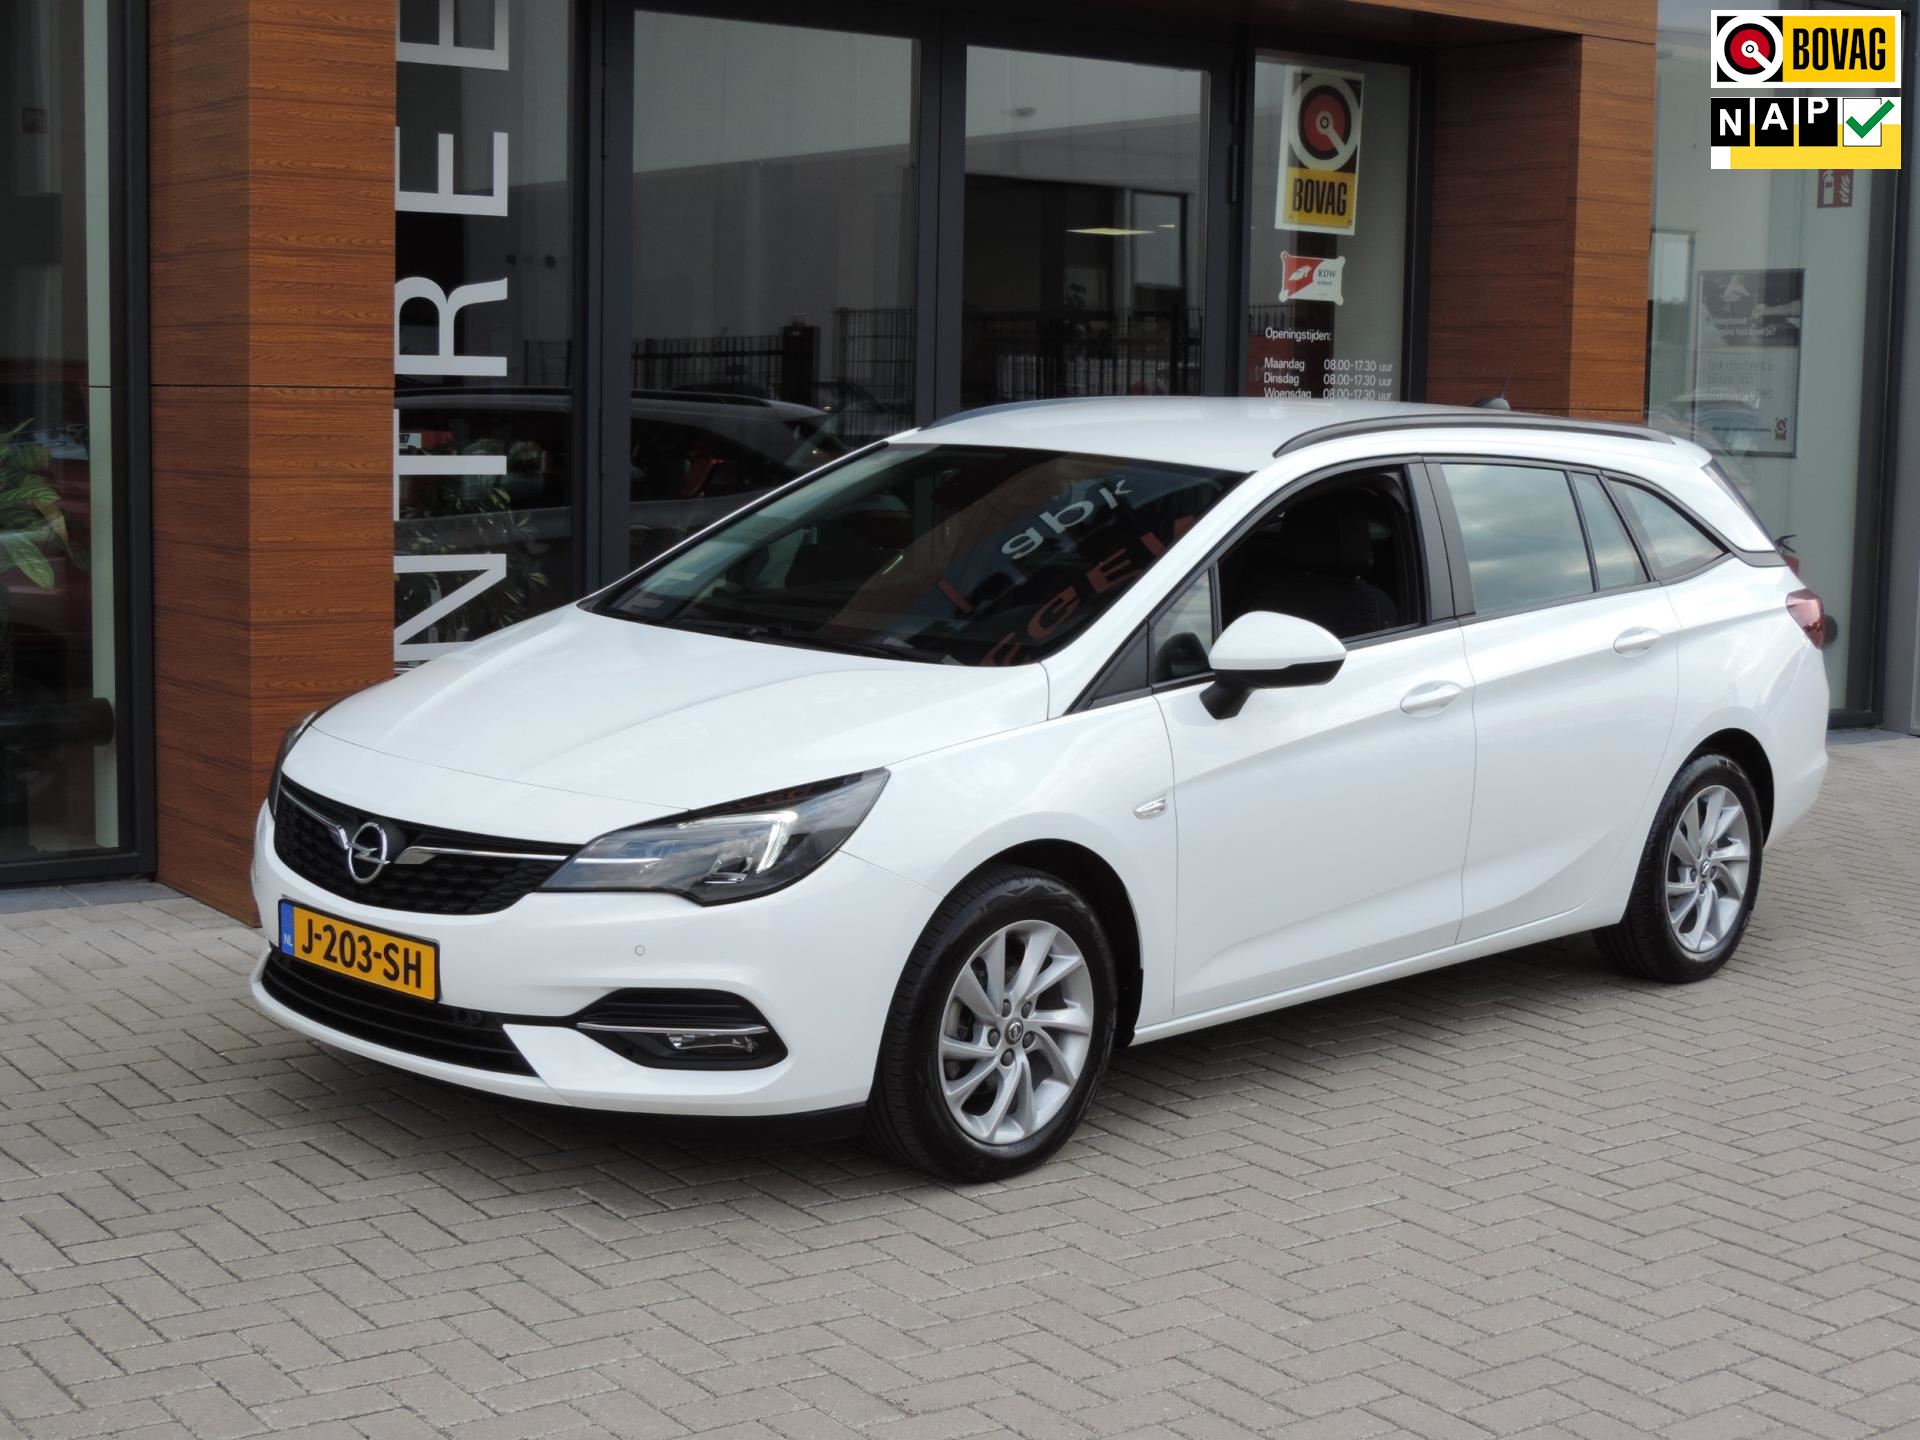 Opel Astra Sports Tourer occasion - Autobedrijf van Meegen